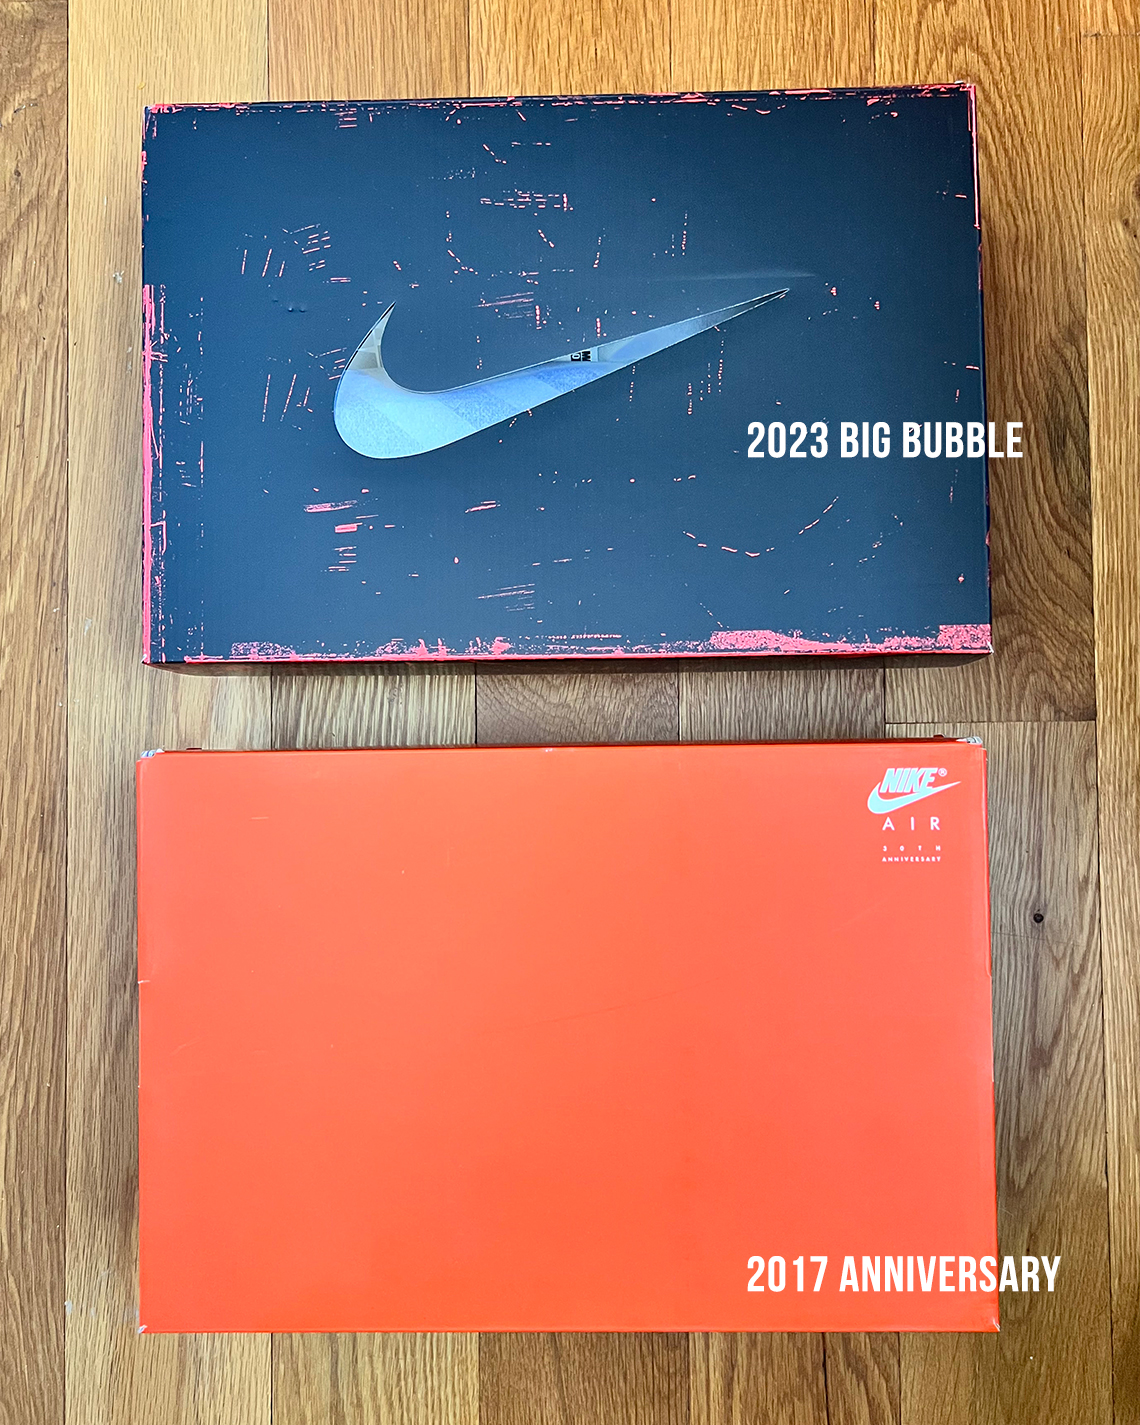 Nike Plaster Luxe Snakeskin on the 2017 Vs 2023 Box